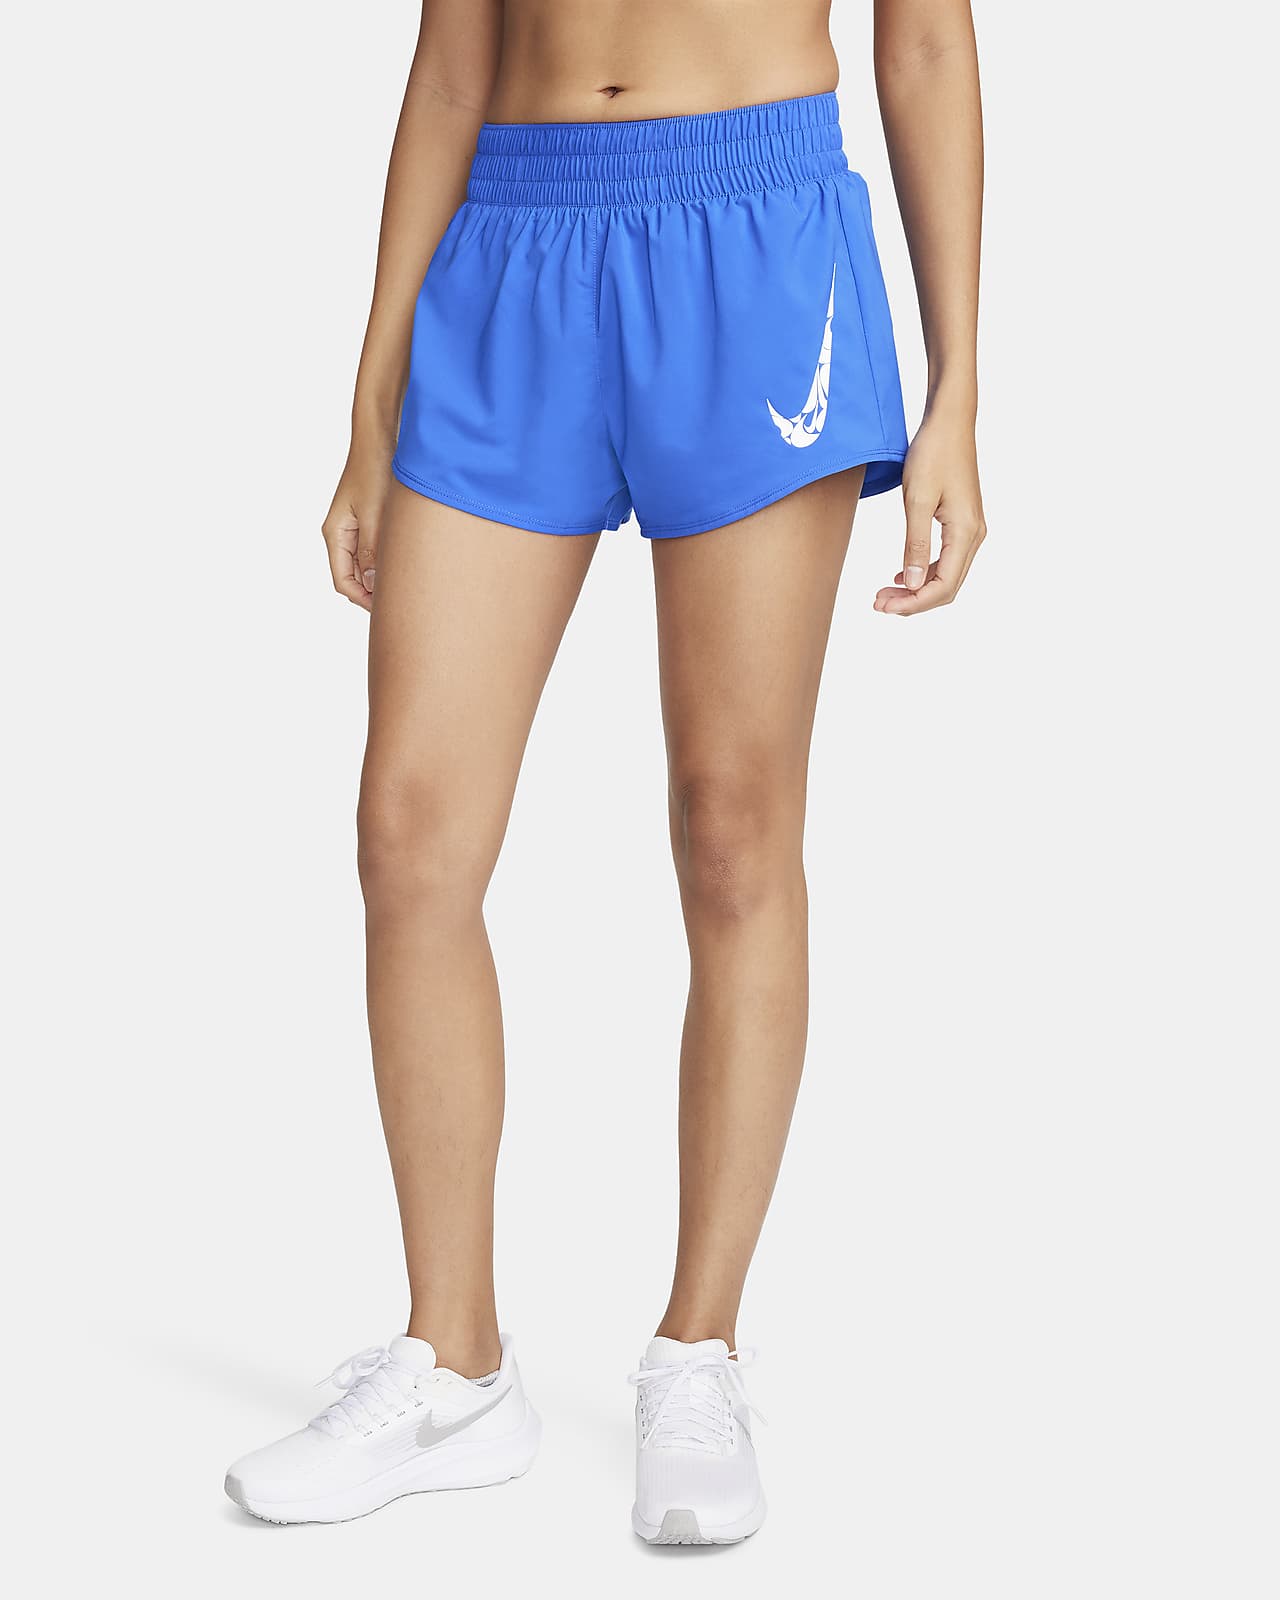 Nike One Pantalons curts Dri-FIT de cintura mitjana amb eslip incorporat de 8 cm - Dona